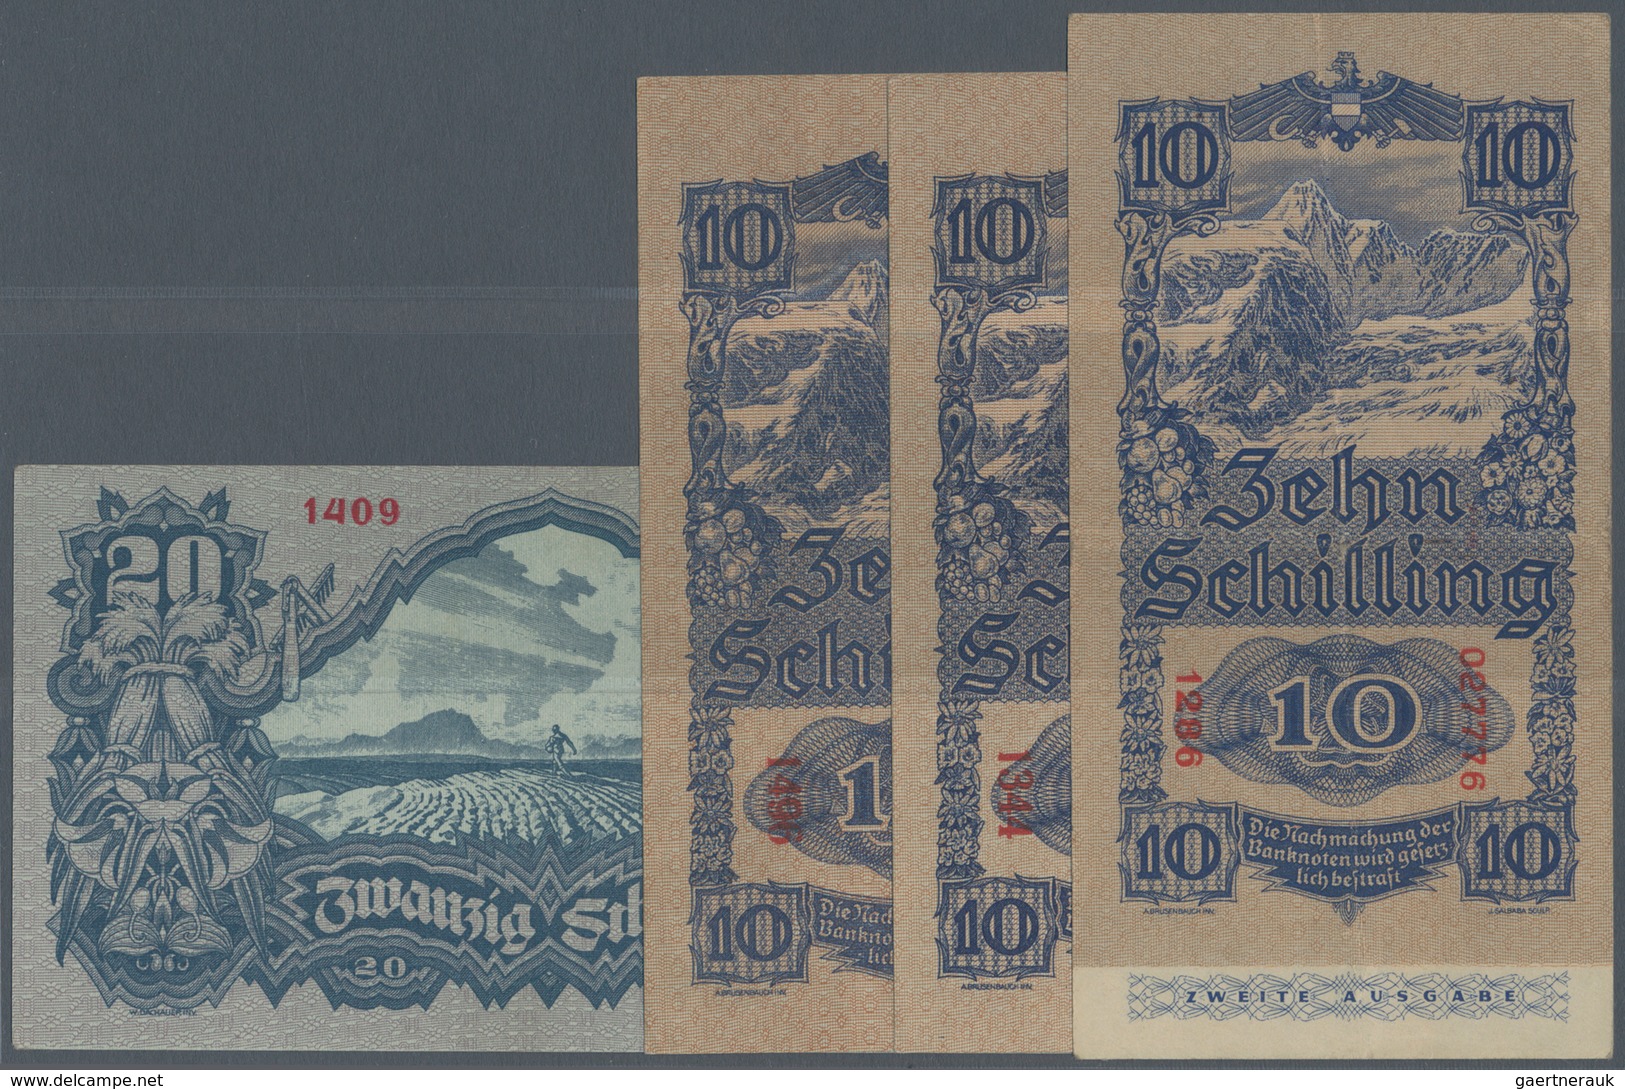 Austria / Österreich: Set Of 4 Notes Containing 10 Schilling (2nd Issue) 1945 (VF) P. 114, 2x 10 Sch - Oesterreich